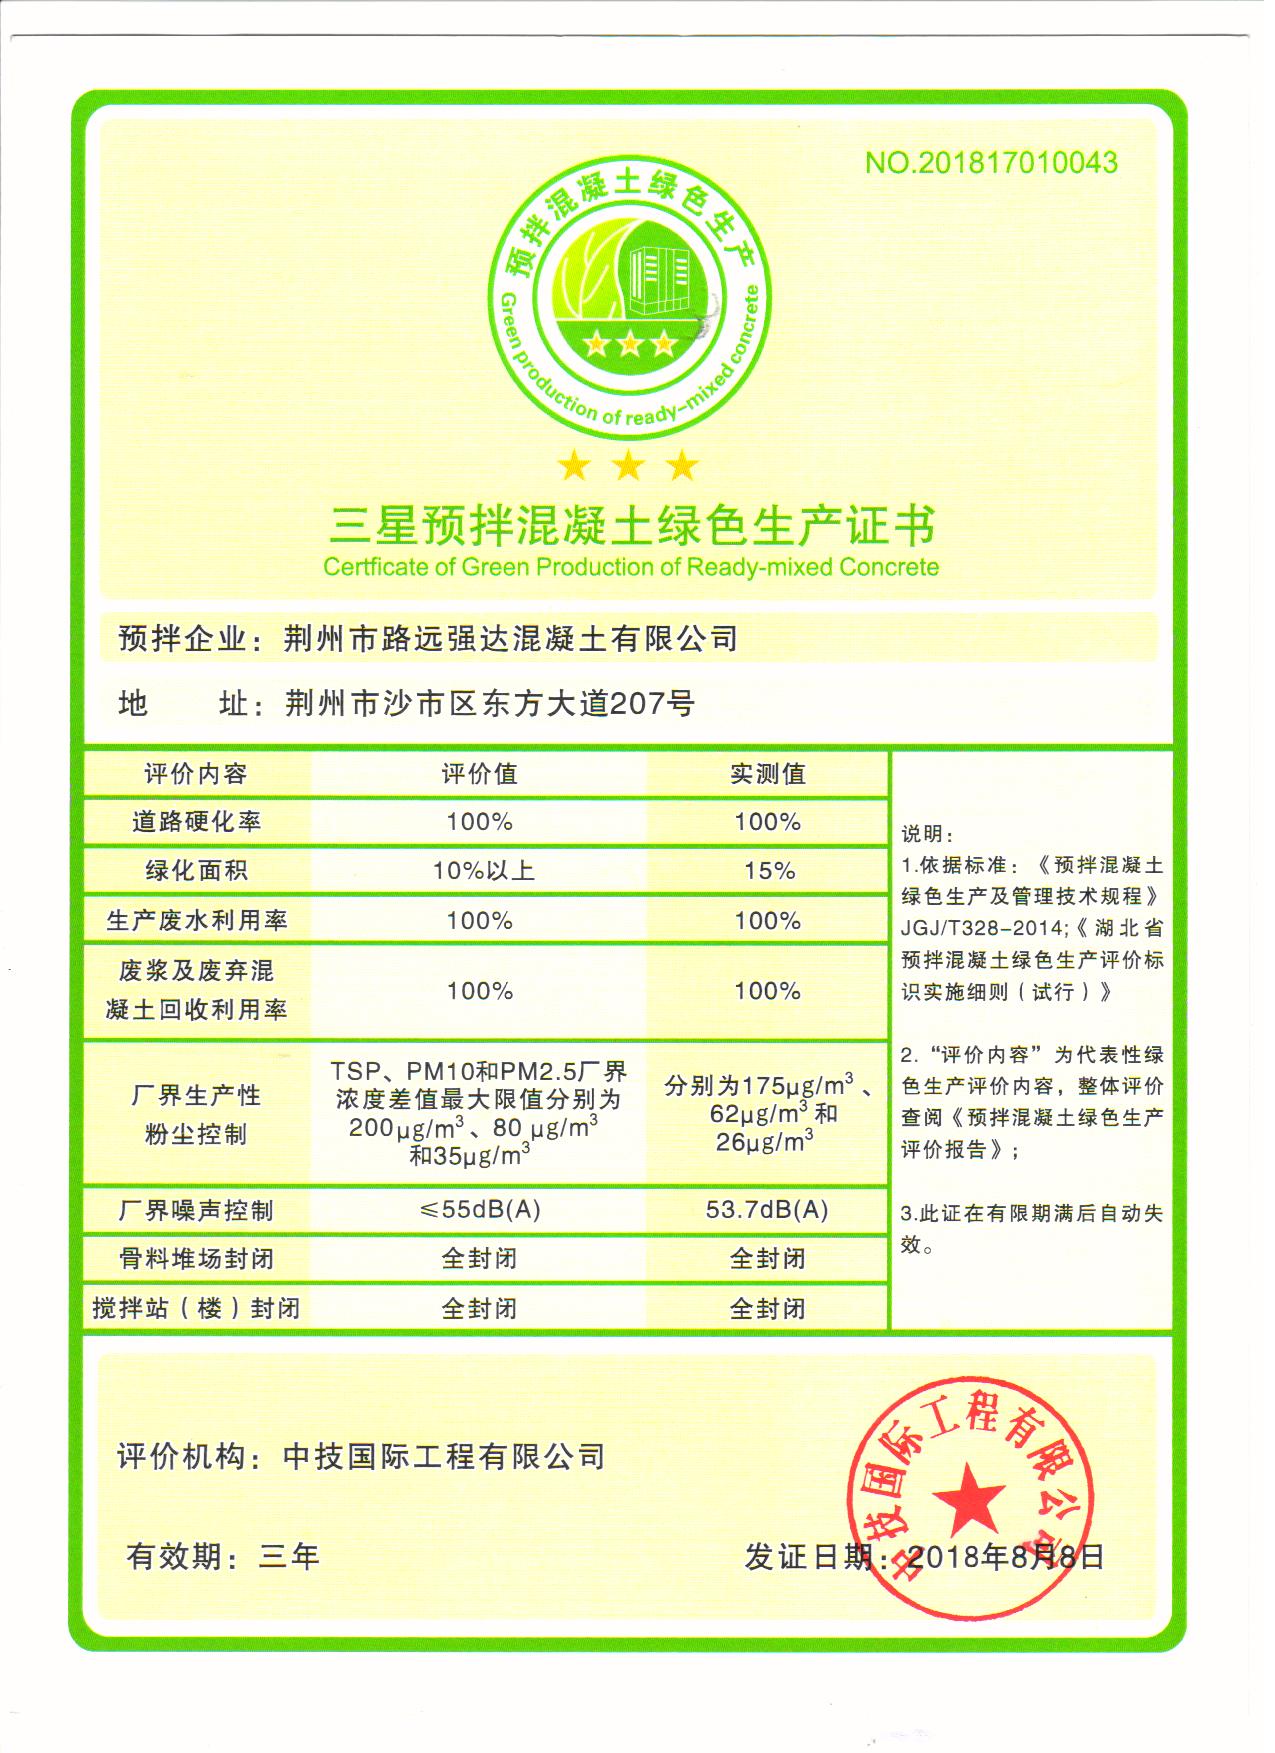 荣获“三星级”绿色生产标识证书